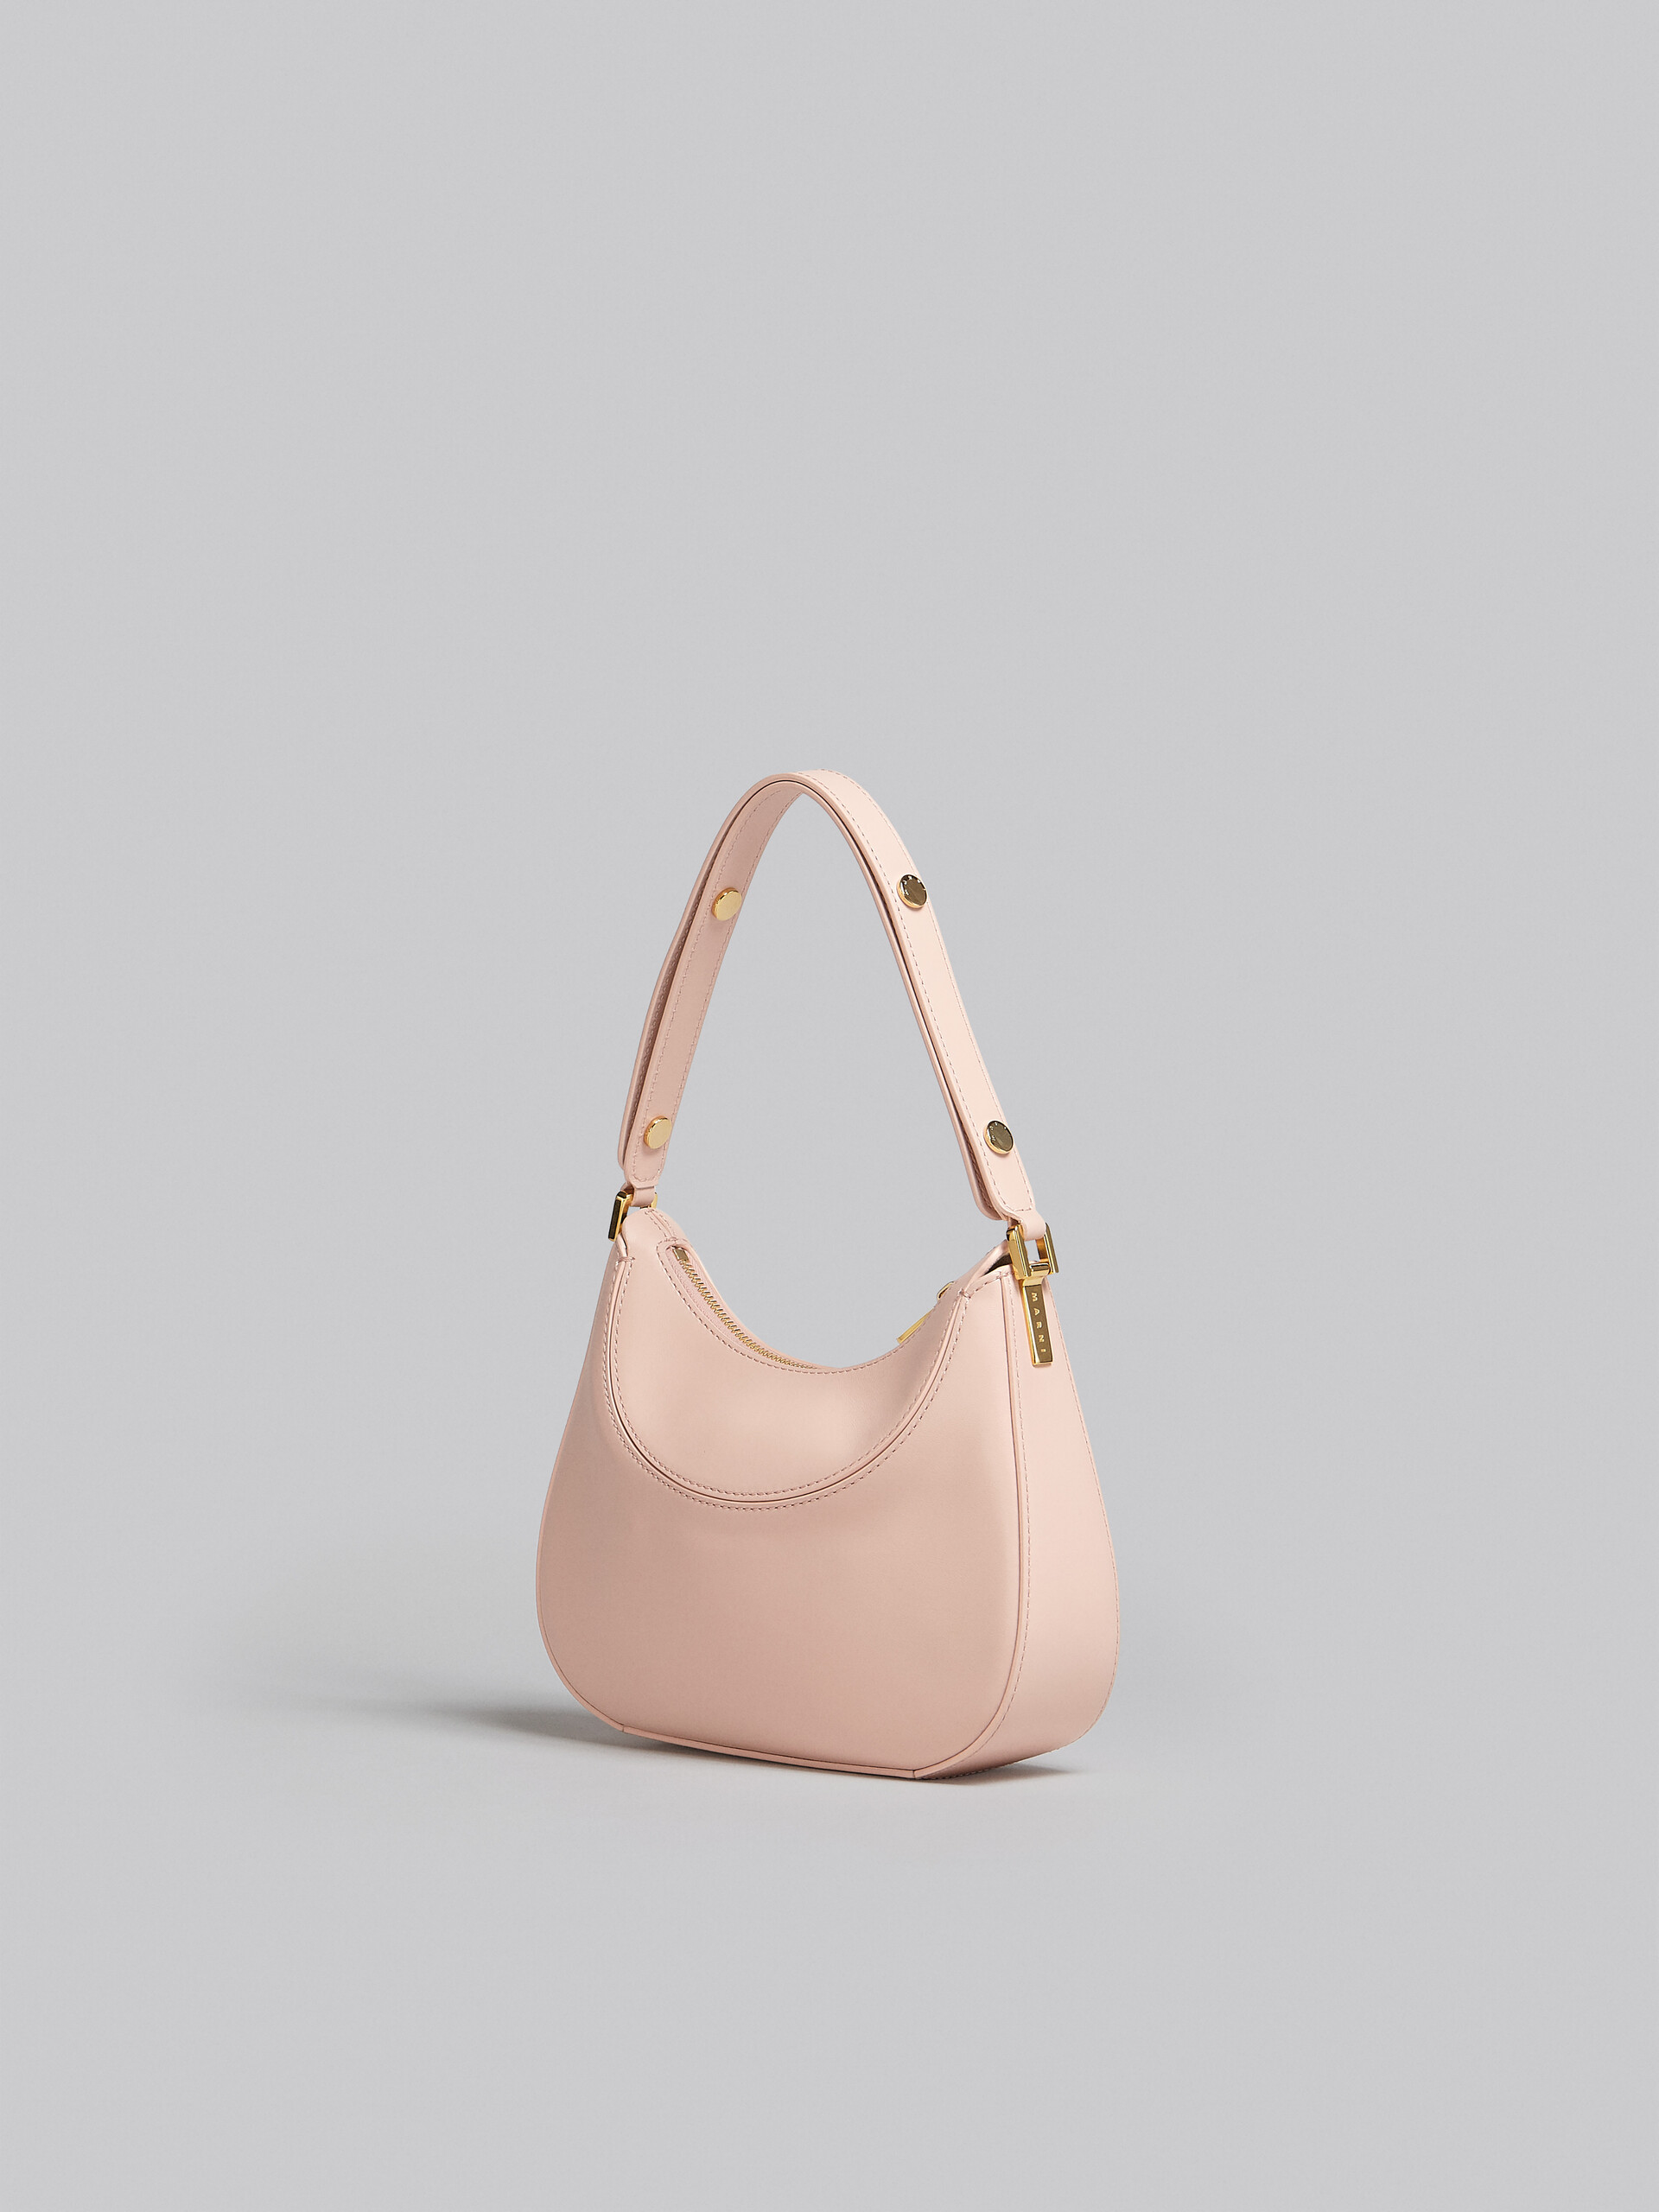 Milano Bag mini in pelle rosa - Borse a mano - Image 2